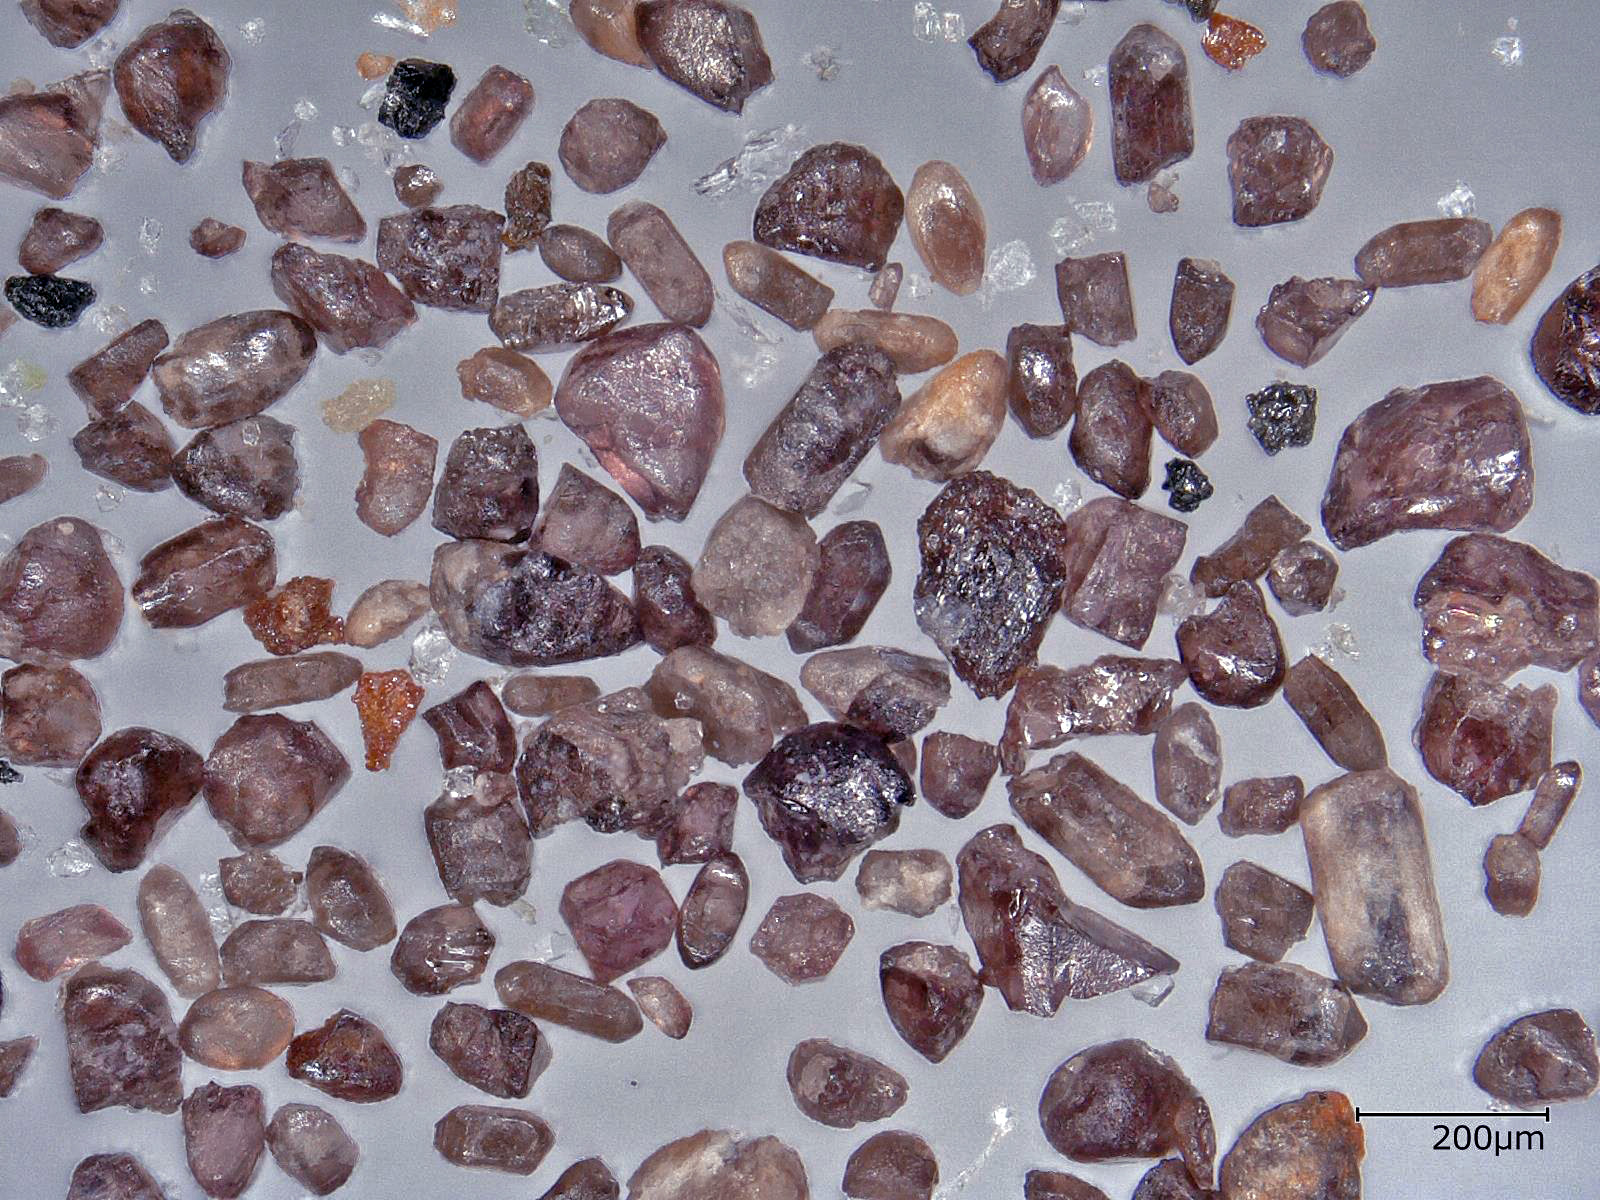 カーボナタイト中から分離された宝石質のジルコン。Loc. Mudtank, W. Australia